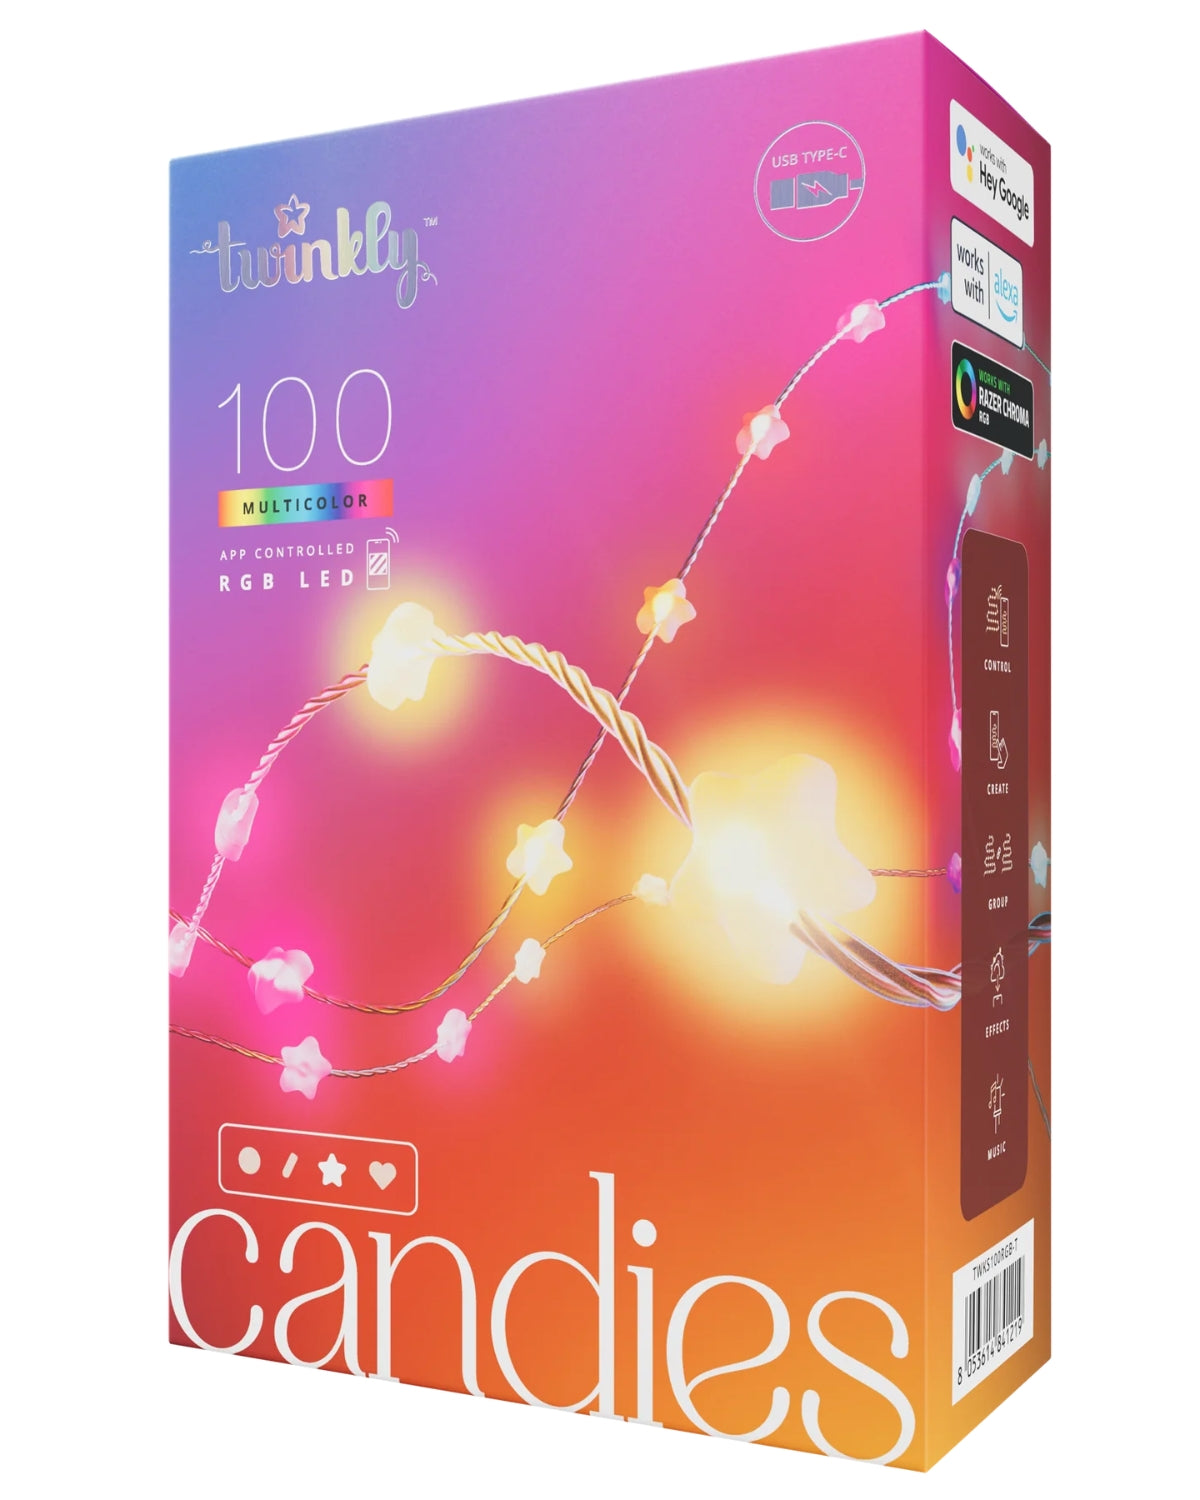 Instalație Smart 100 LED RGB Twinkly Candies Stars, Bluetooth, Wi-Fi, USB-C, 6 m, IP20